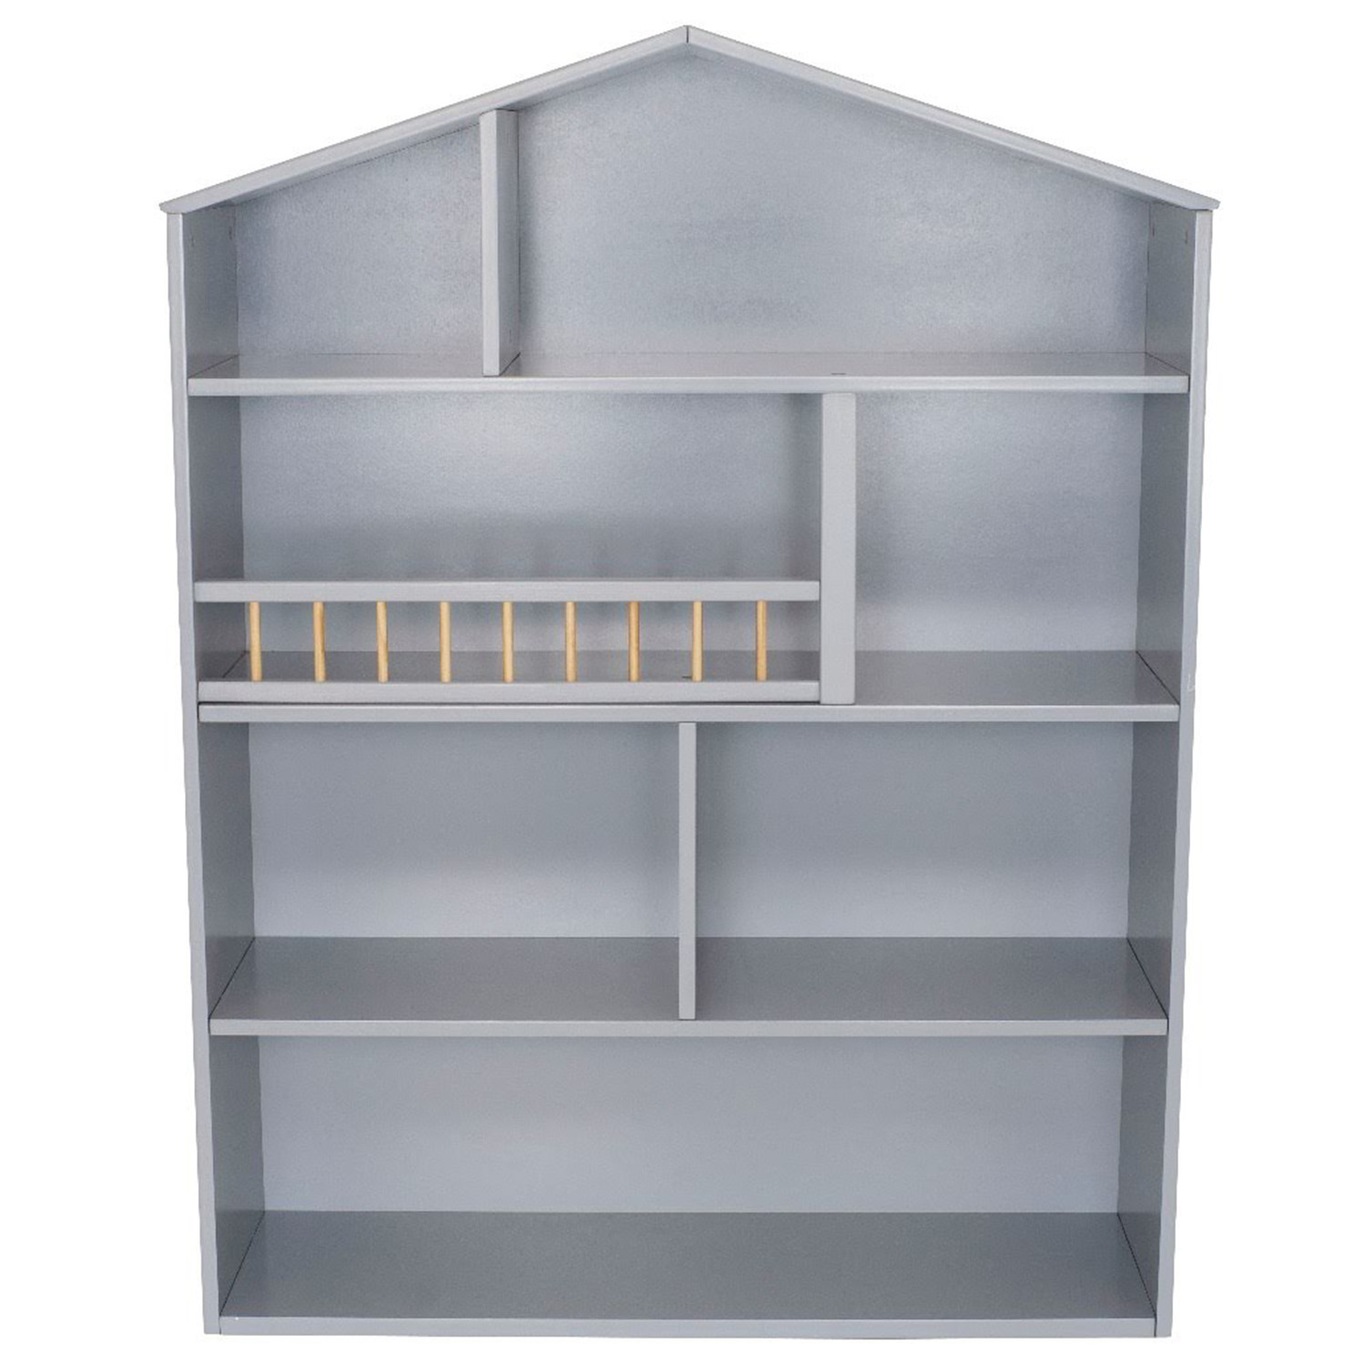 House Shelf Large, Grey